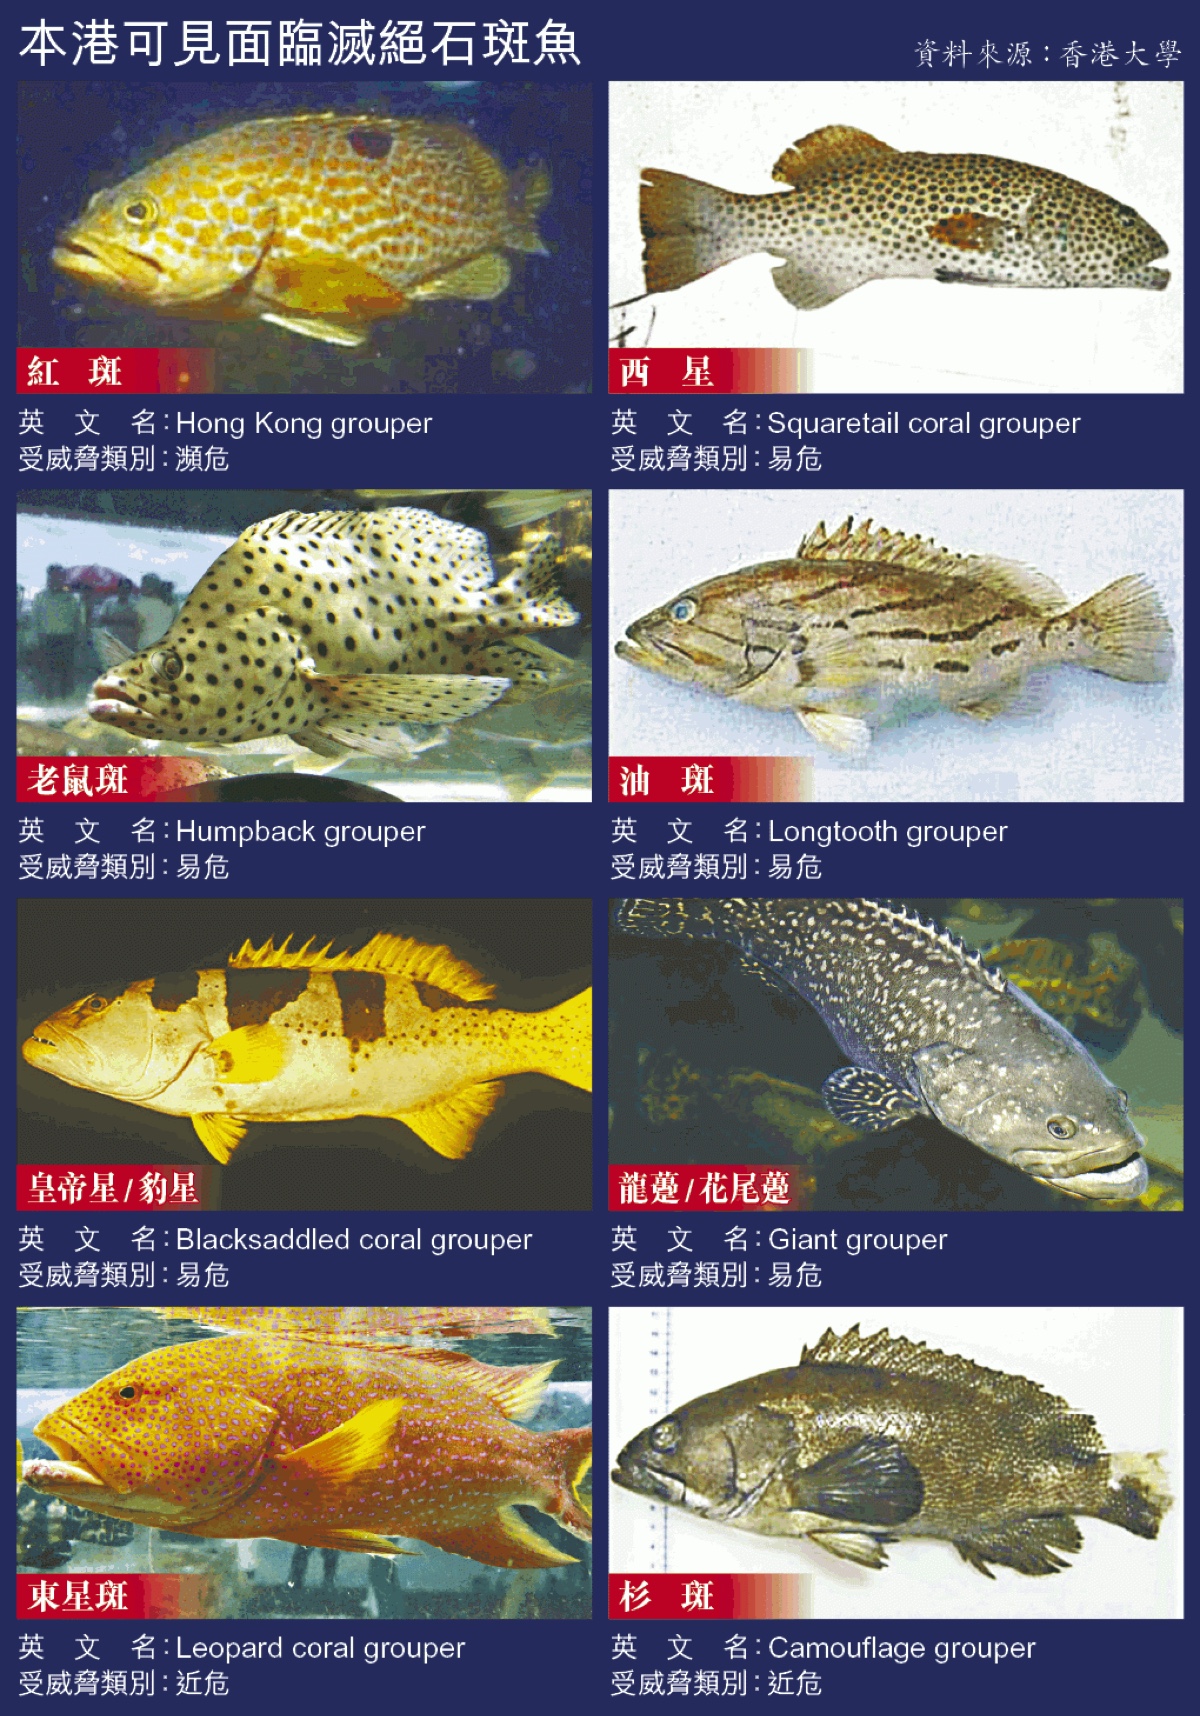 石斑鱼的英语名称 grouper 来自於葡萄牙语 garoupa 一词,跟英语里的